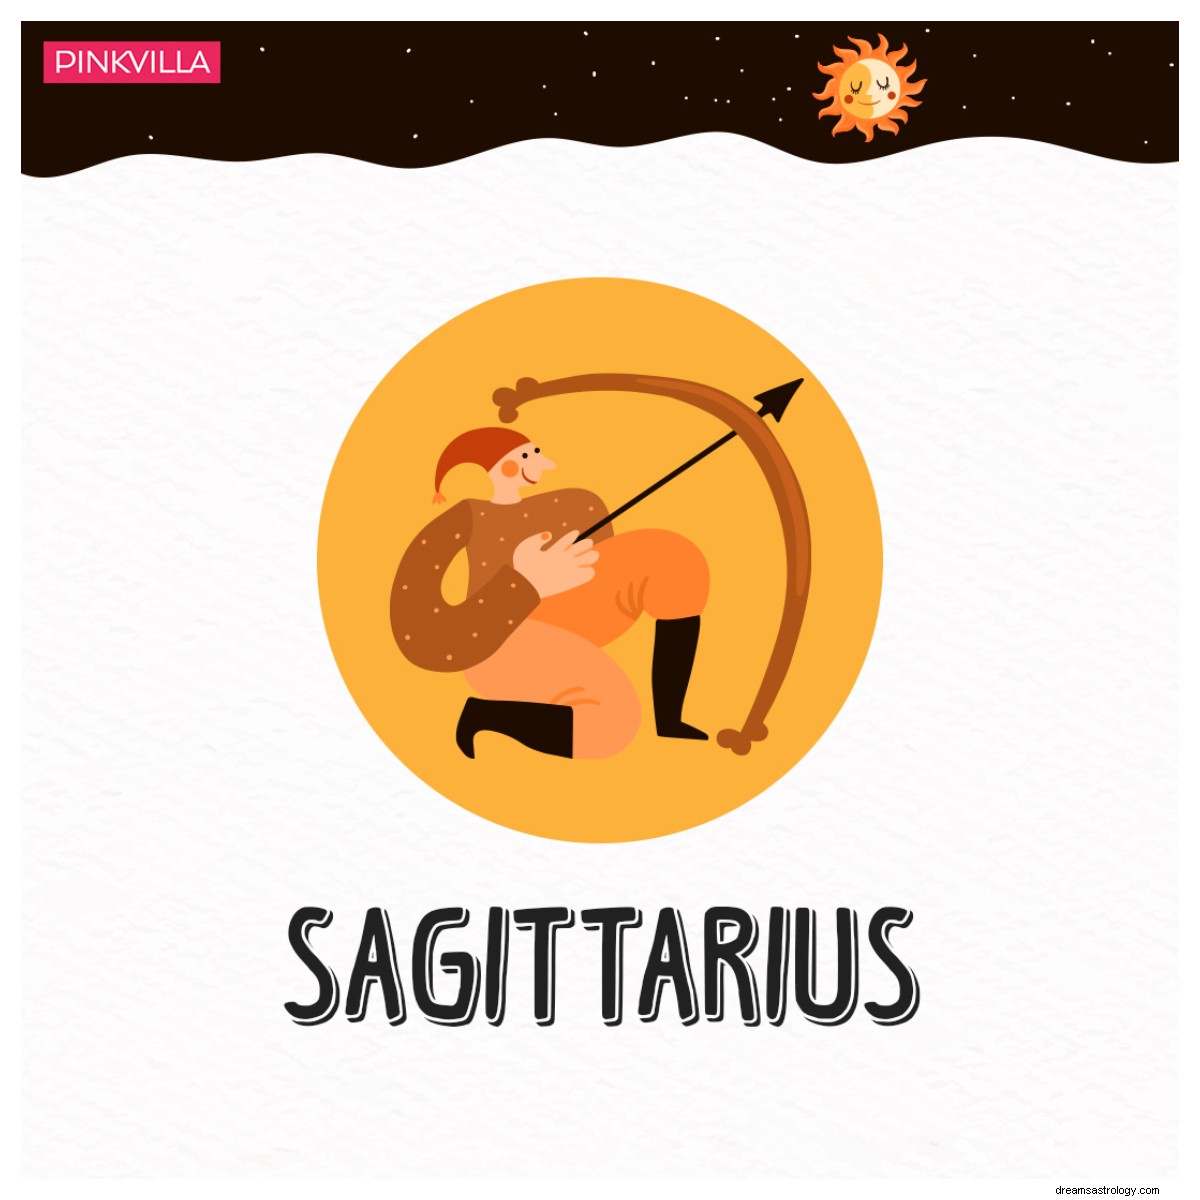 De Aries a Sagitario:4 signos del zodiaco que probablemente arruinen sus relaciones 